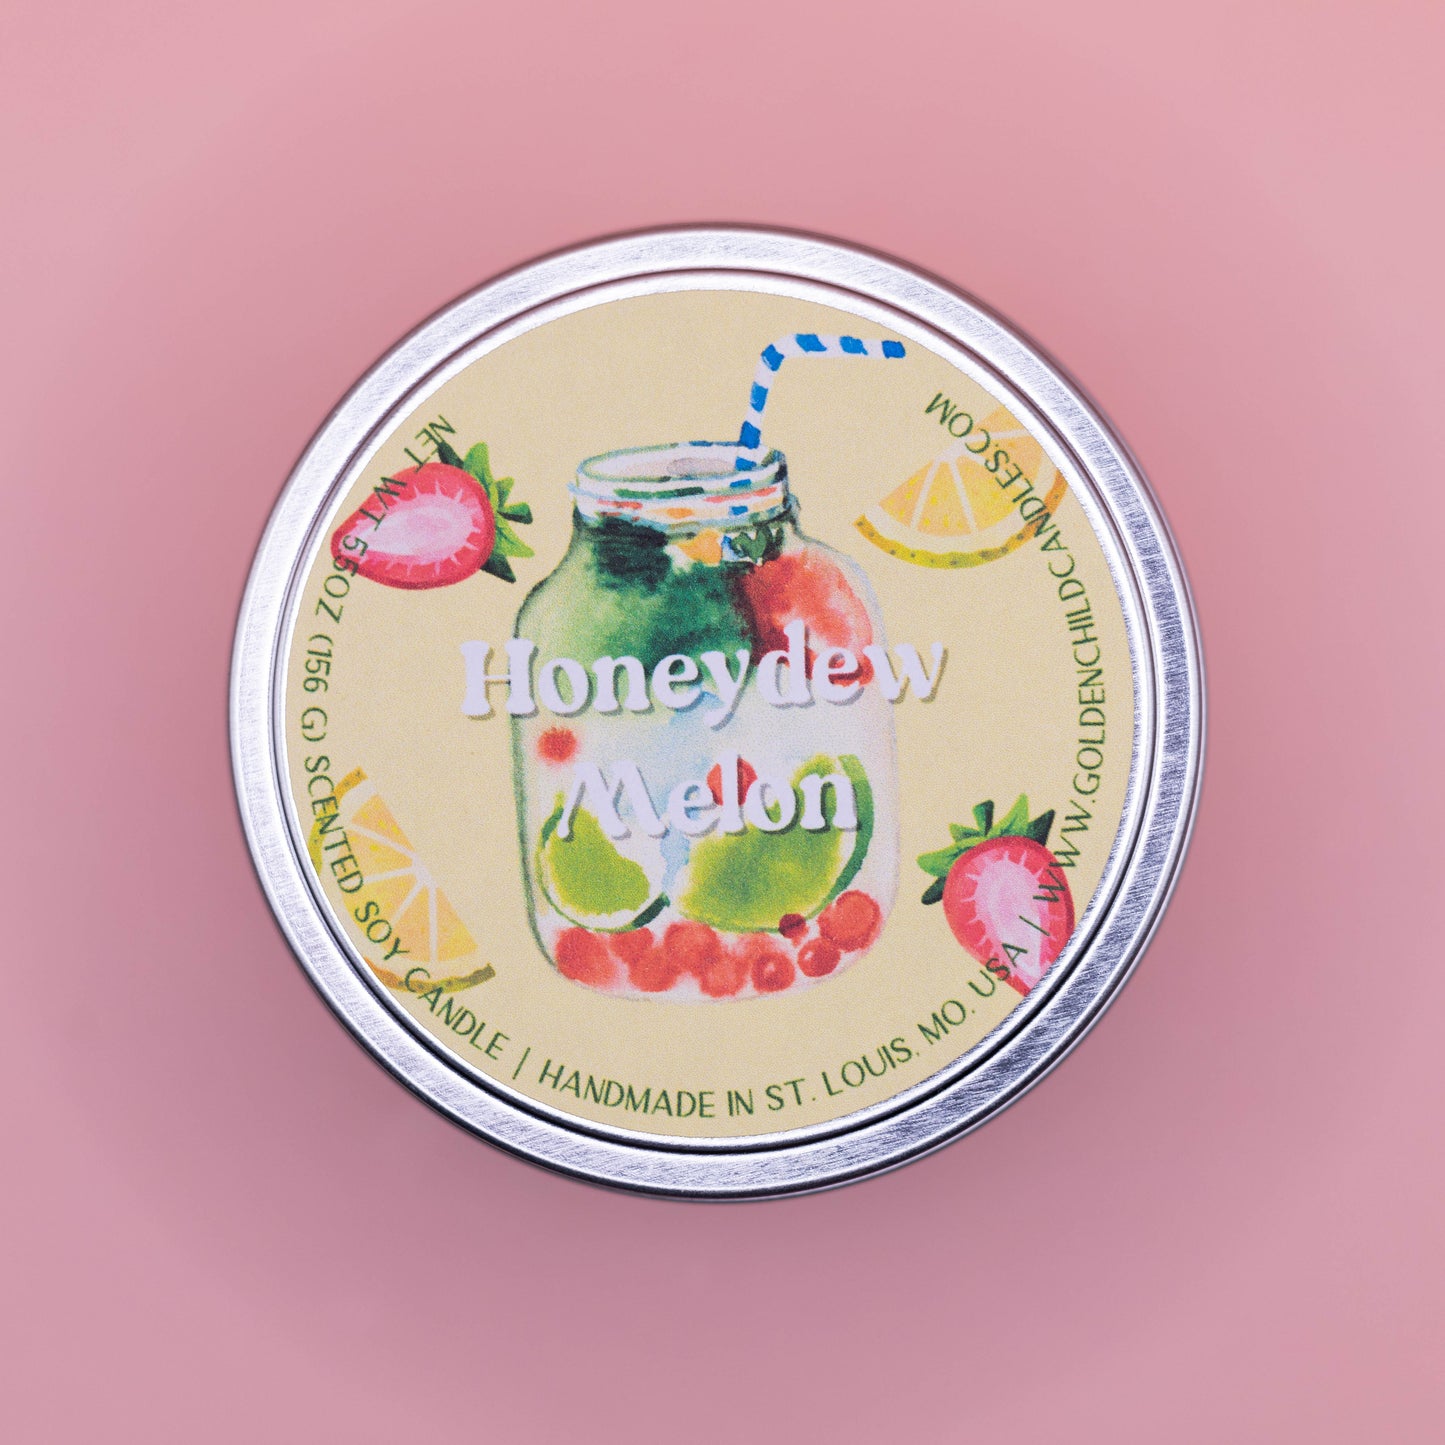 Honeydew Melon 5.5 oz Travel Tin Candle